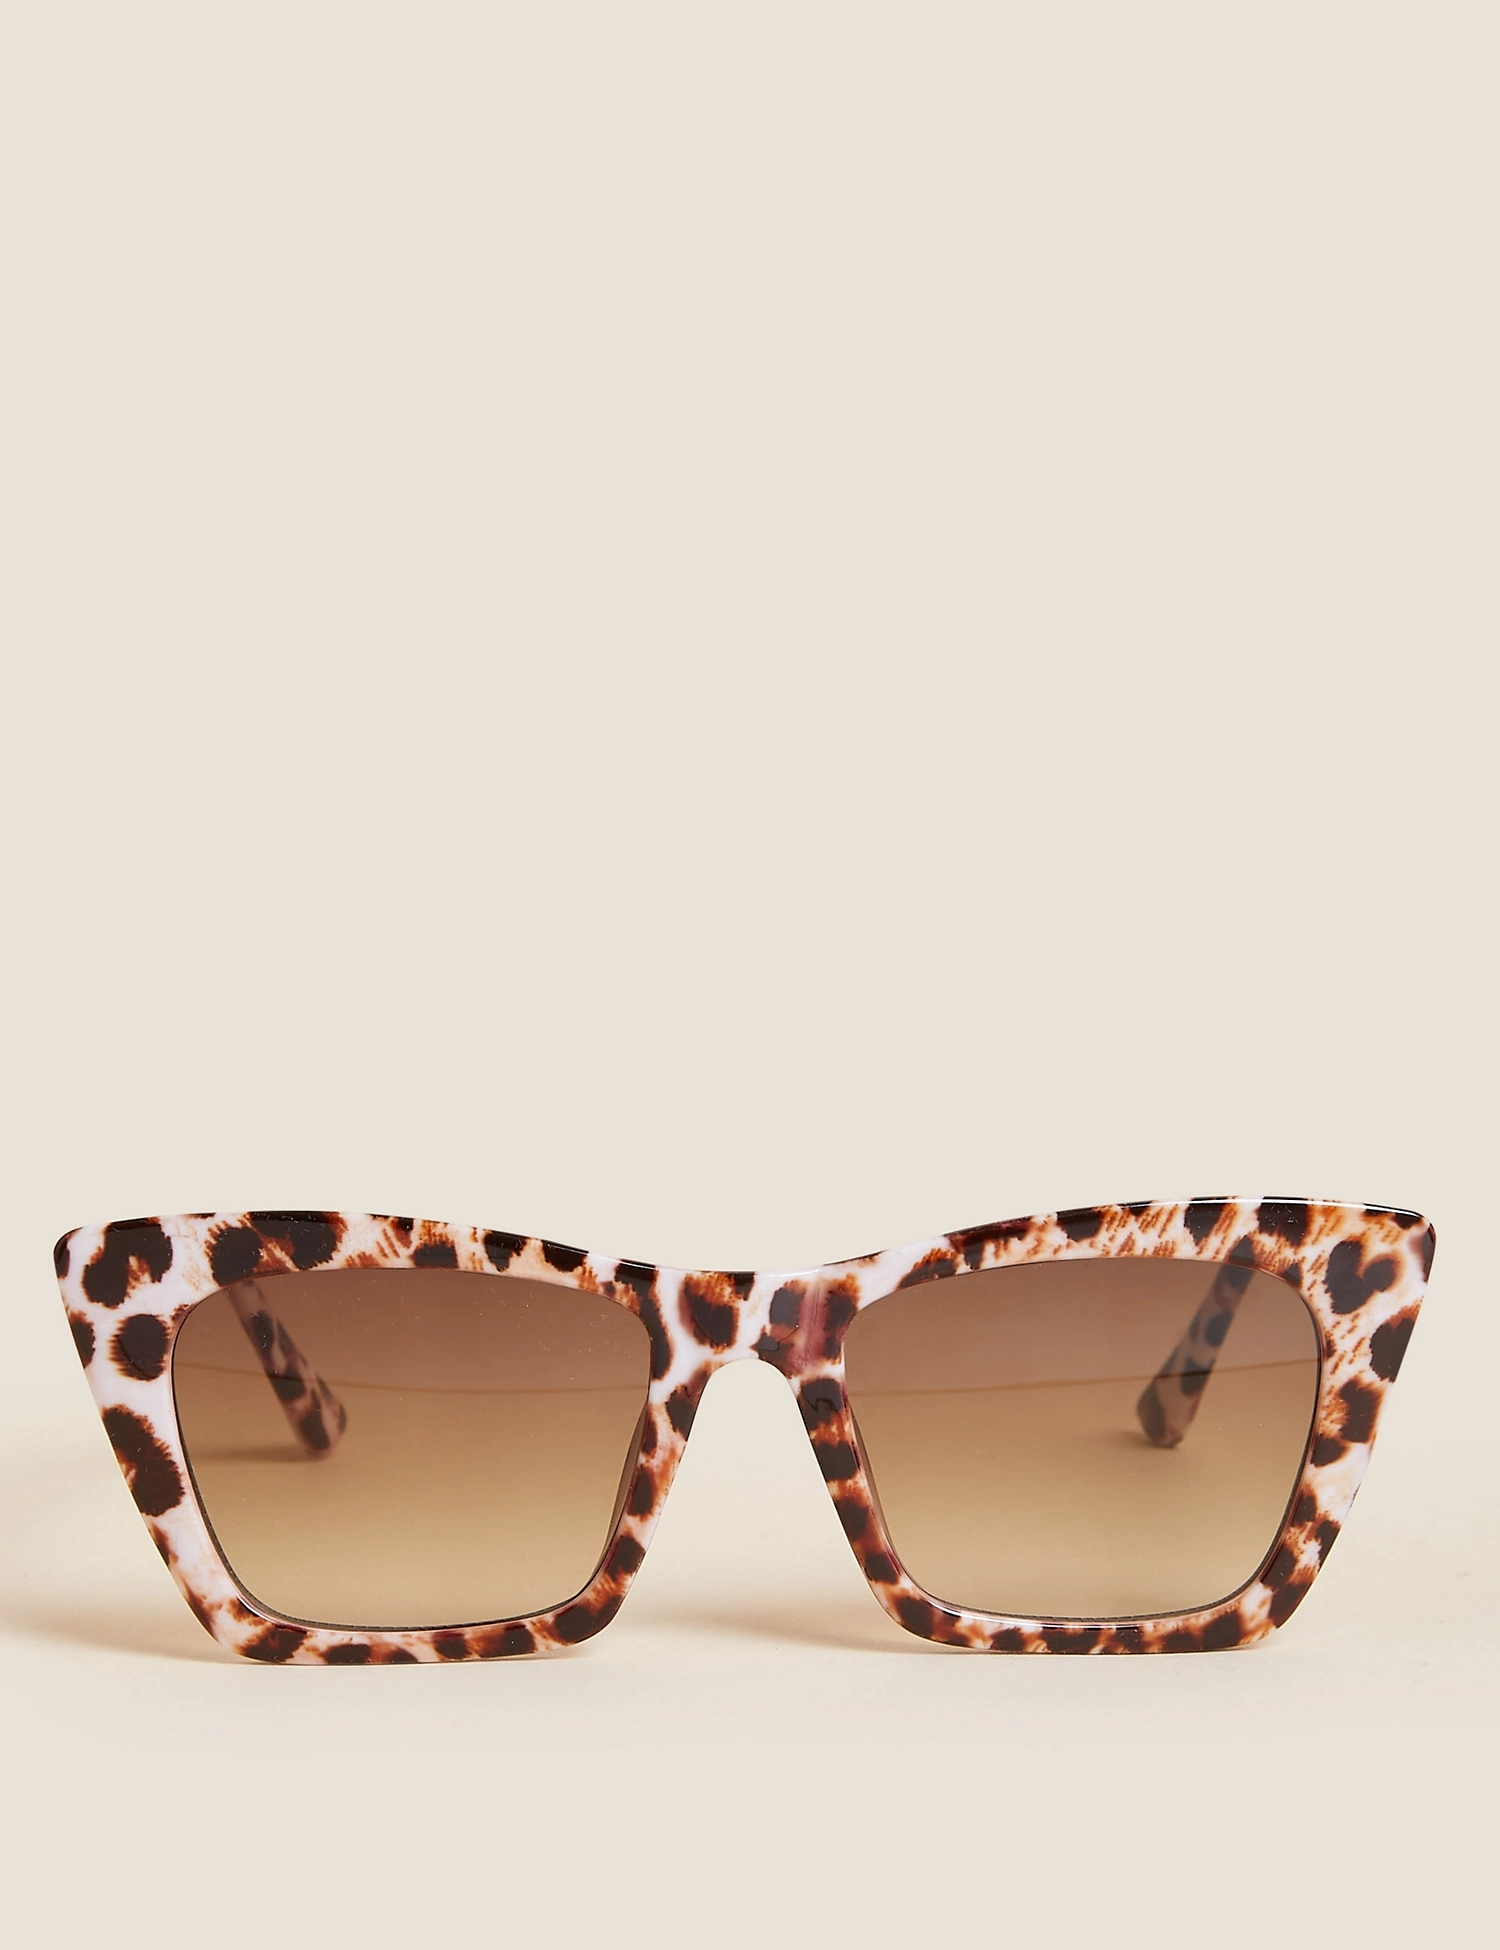 M&amp;S Angular Cat-Eye Sunglasses €20